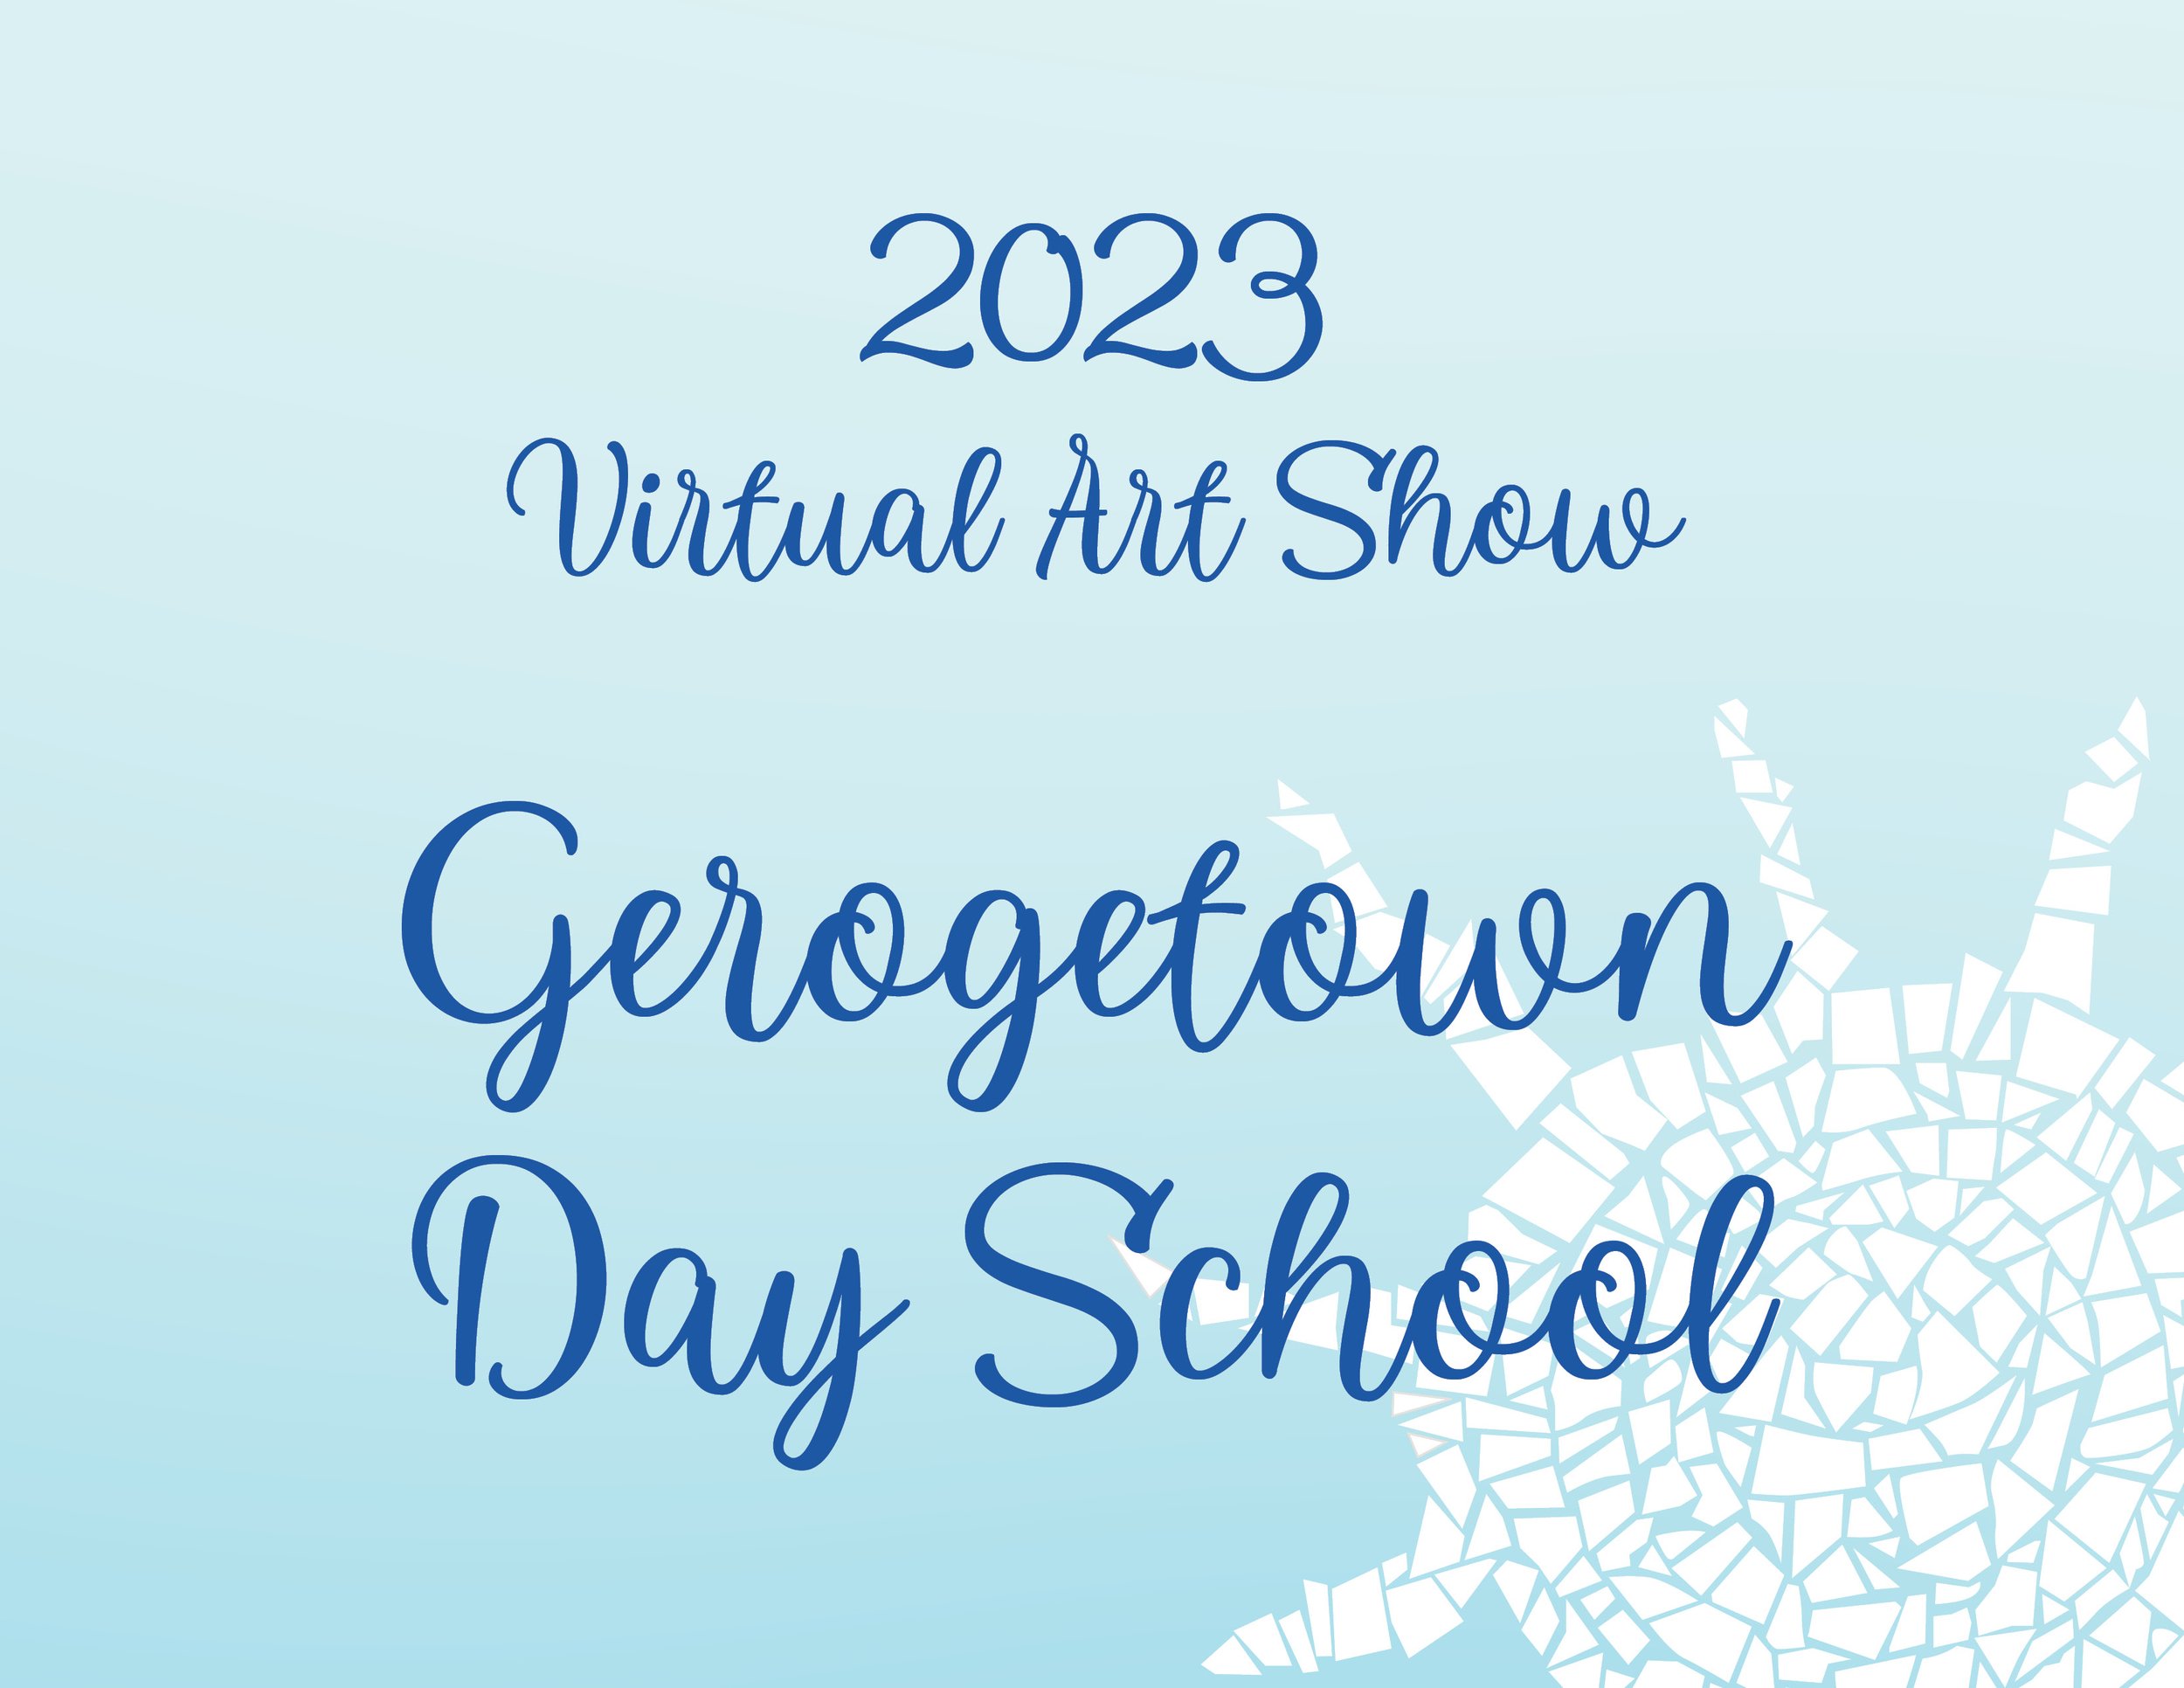 2023 Georgetown Day School.jpg